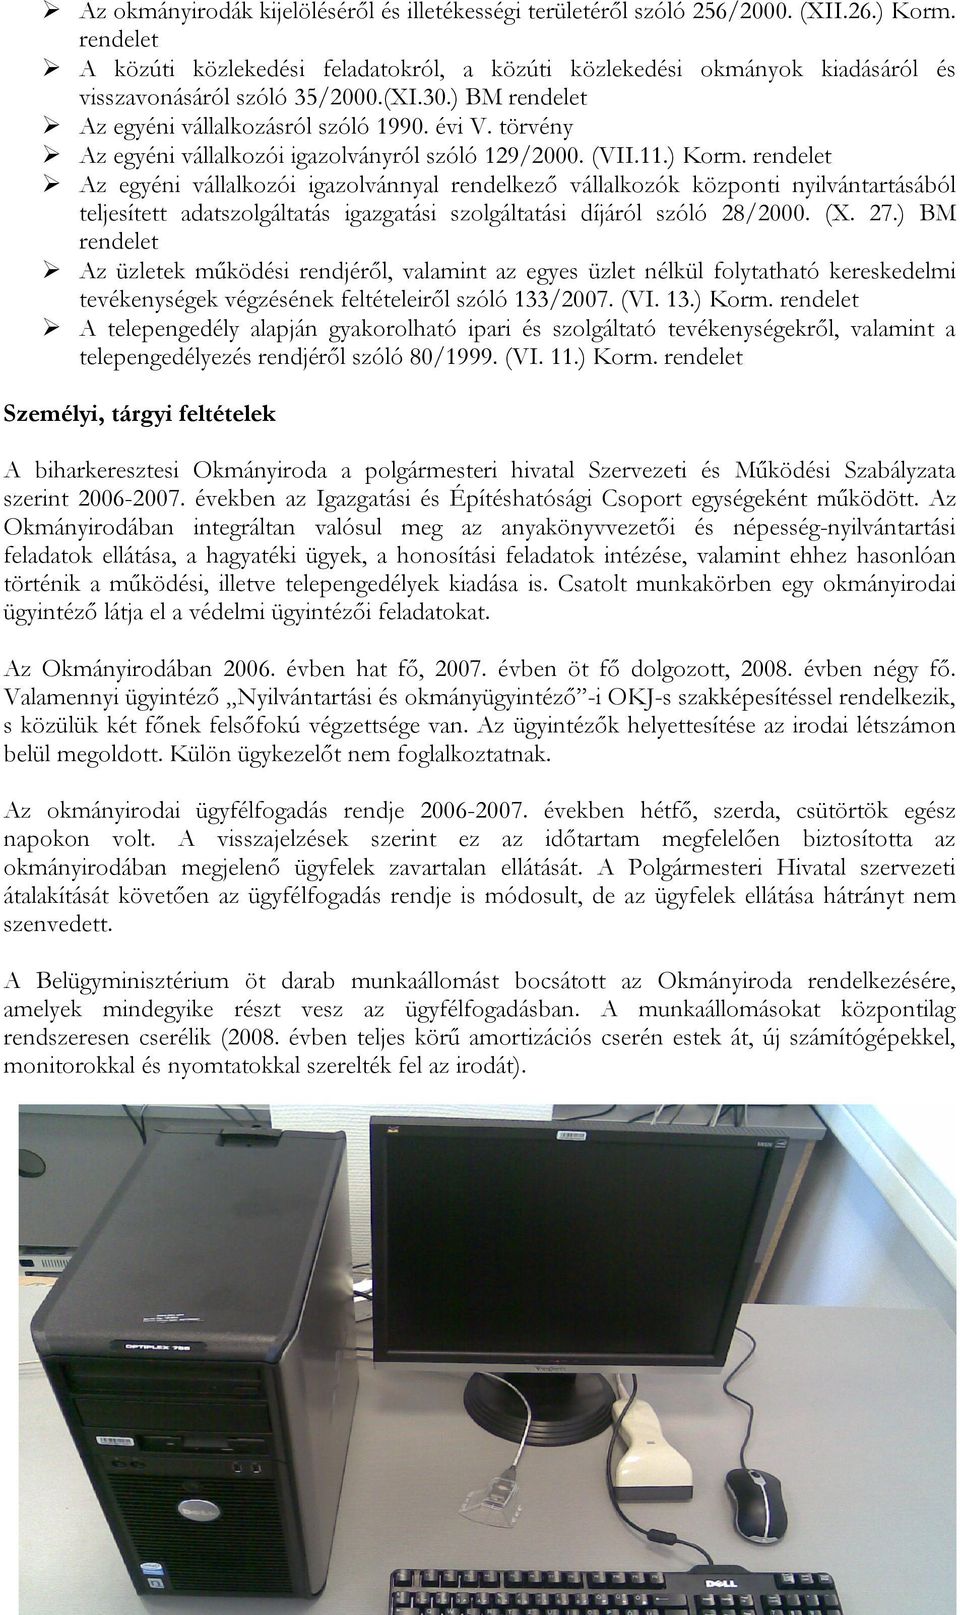 törvény Az egyéni vállalkozói igazolványról szóló 129/2000. (VII.11.) Korm.